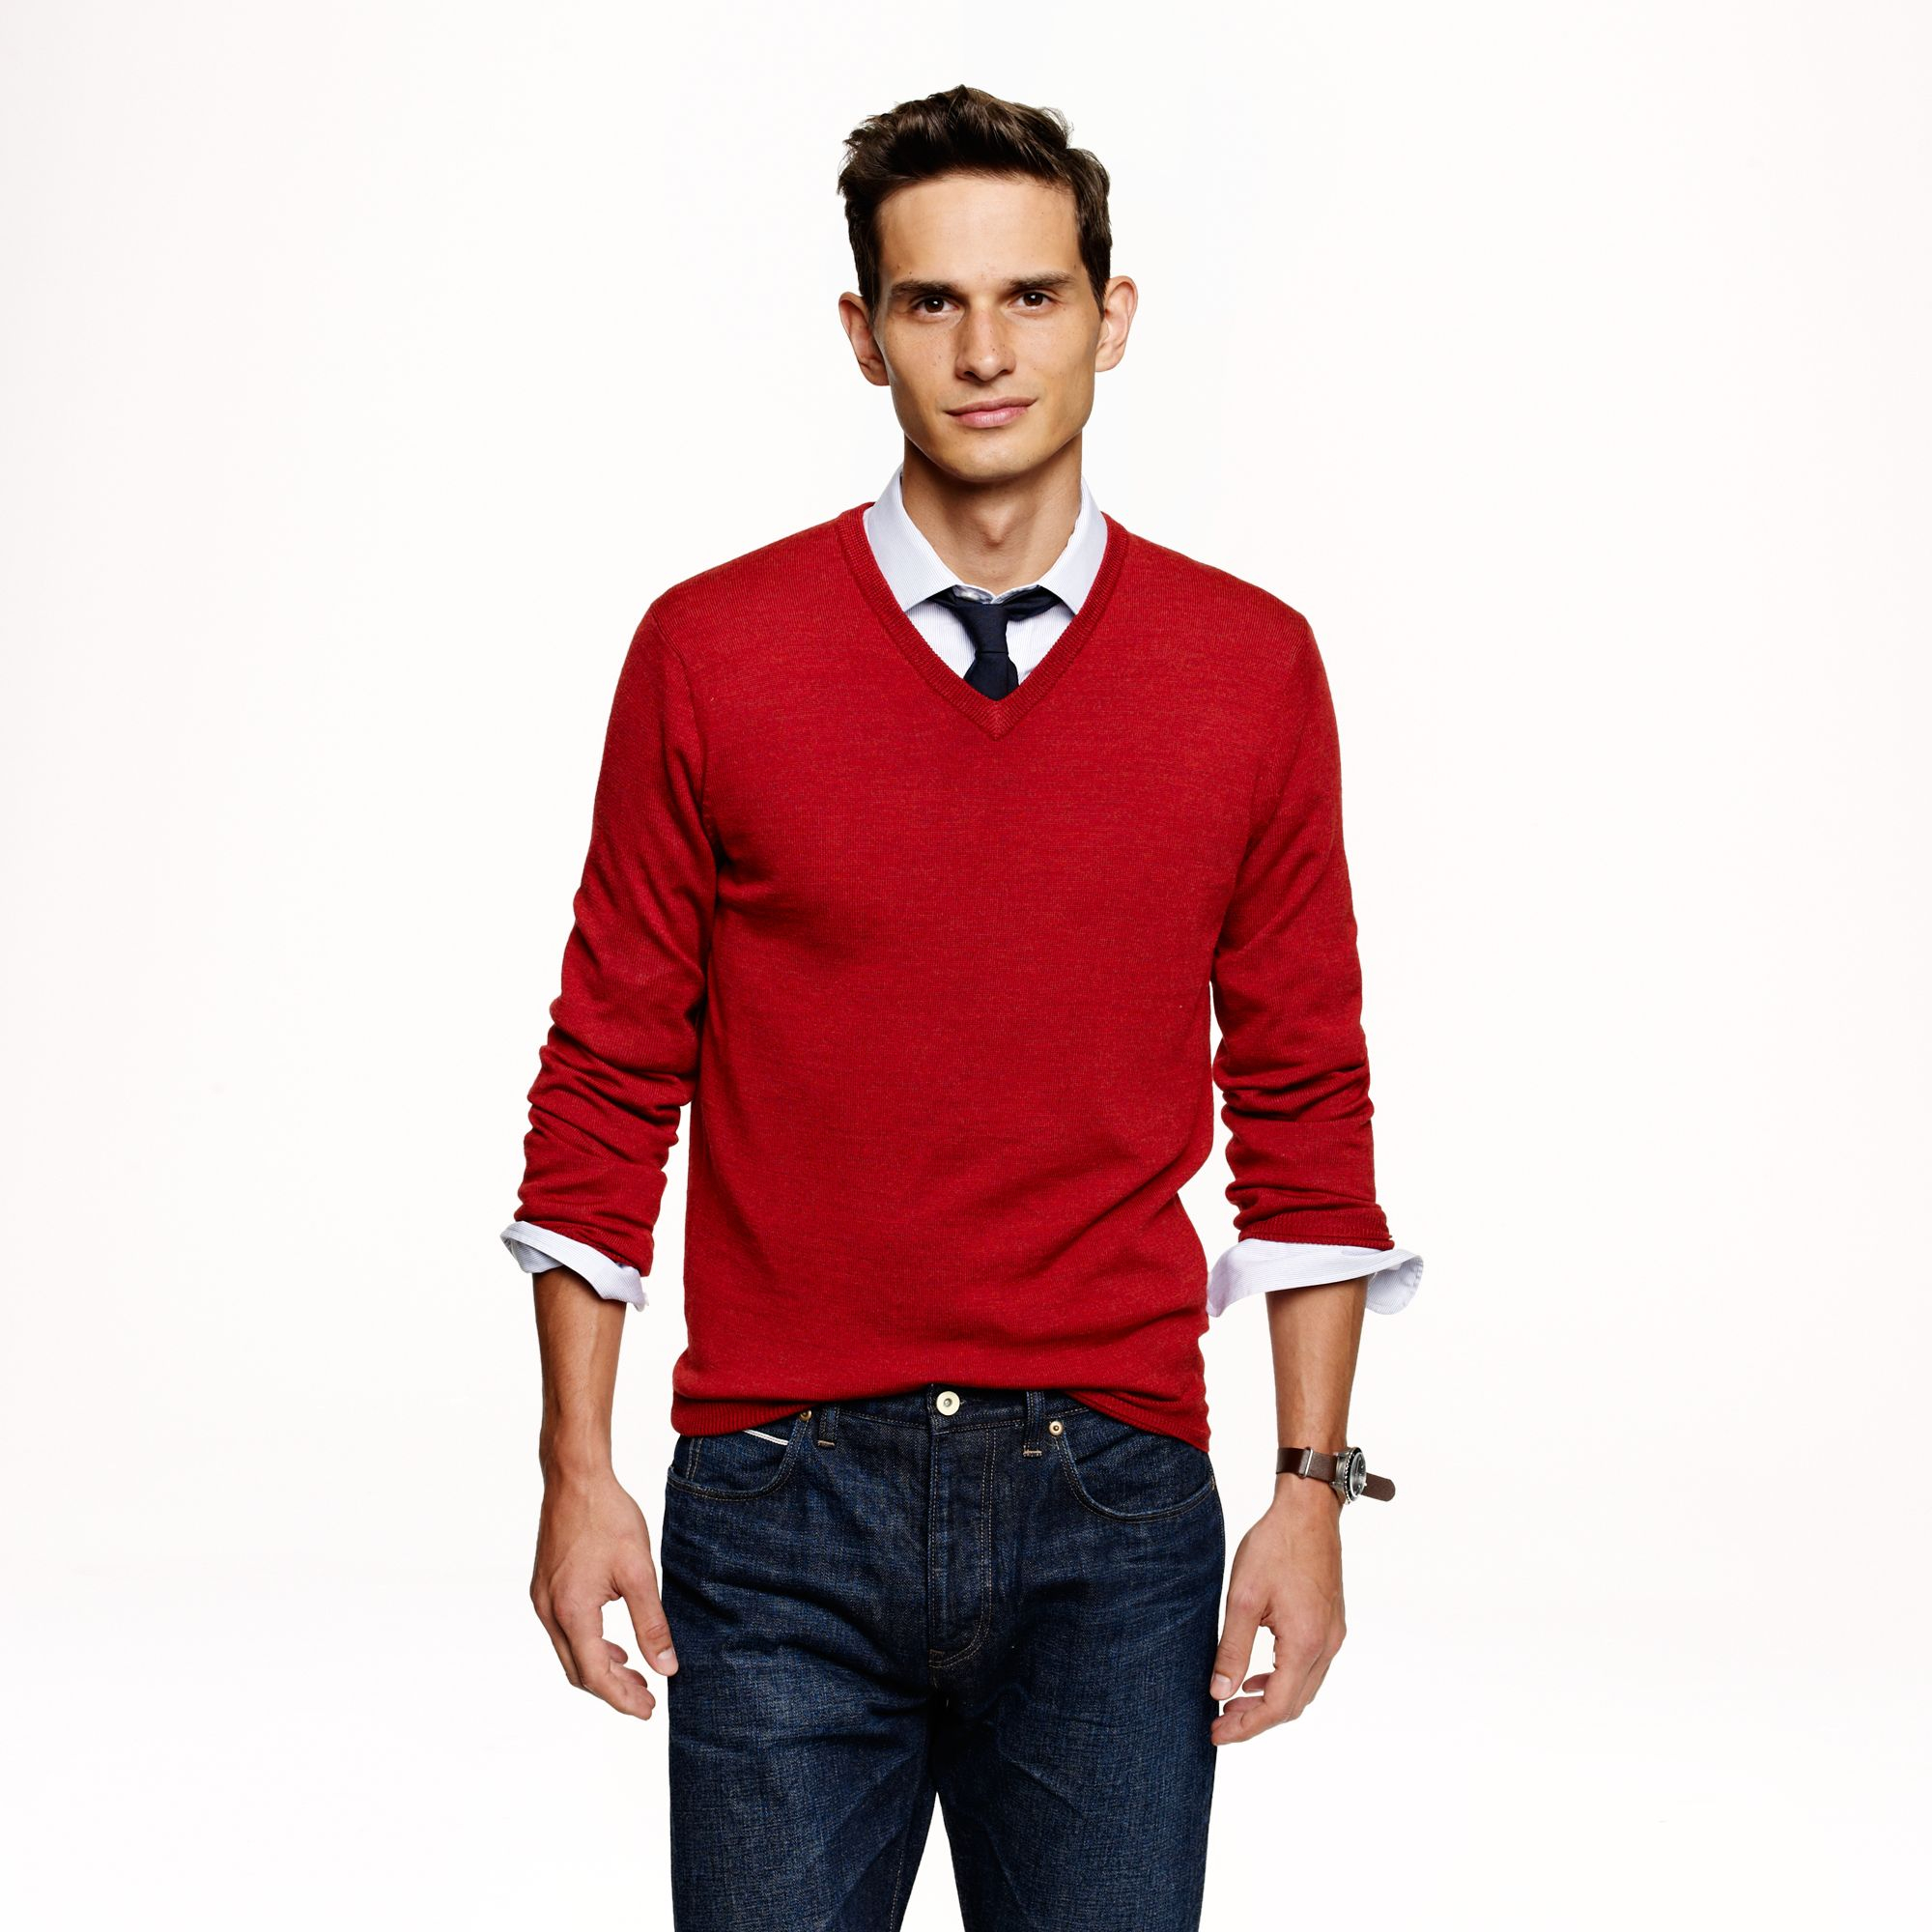 J.Crew Slim Merino Wool V-neck Sweater in Red for Men - Lyst